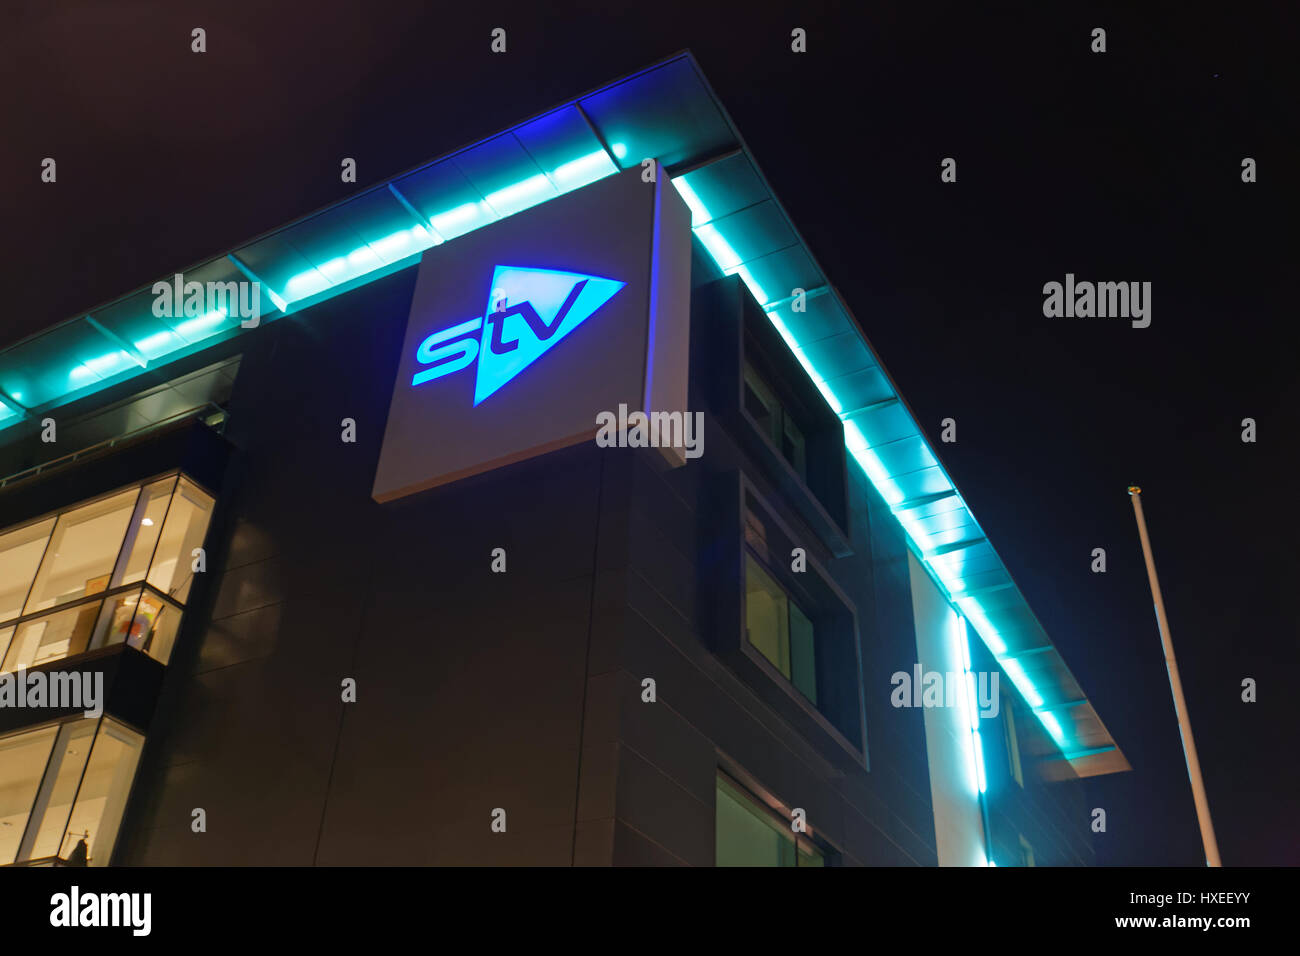 La télévision studios stv Ecosse logo en néon nuit Banque D'Images